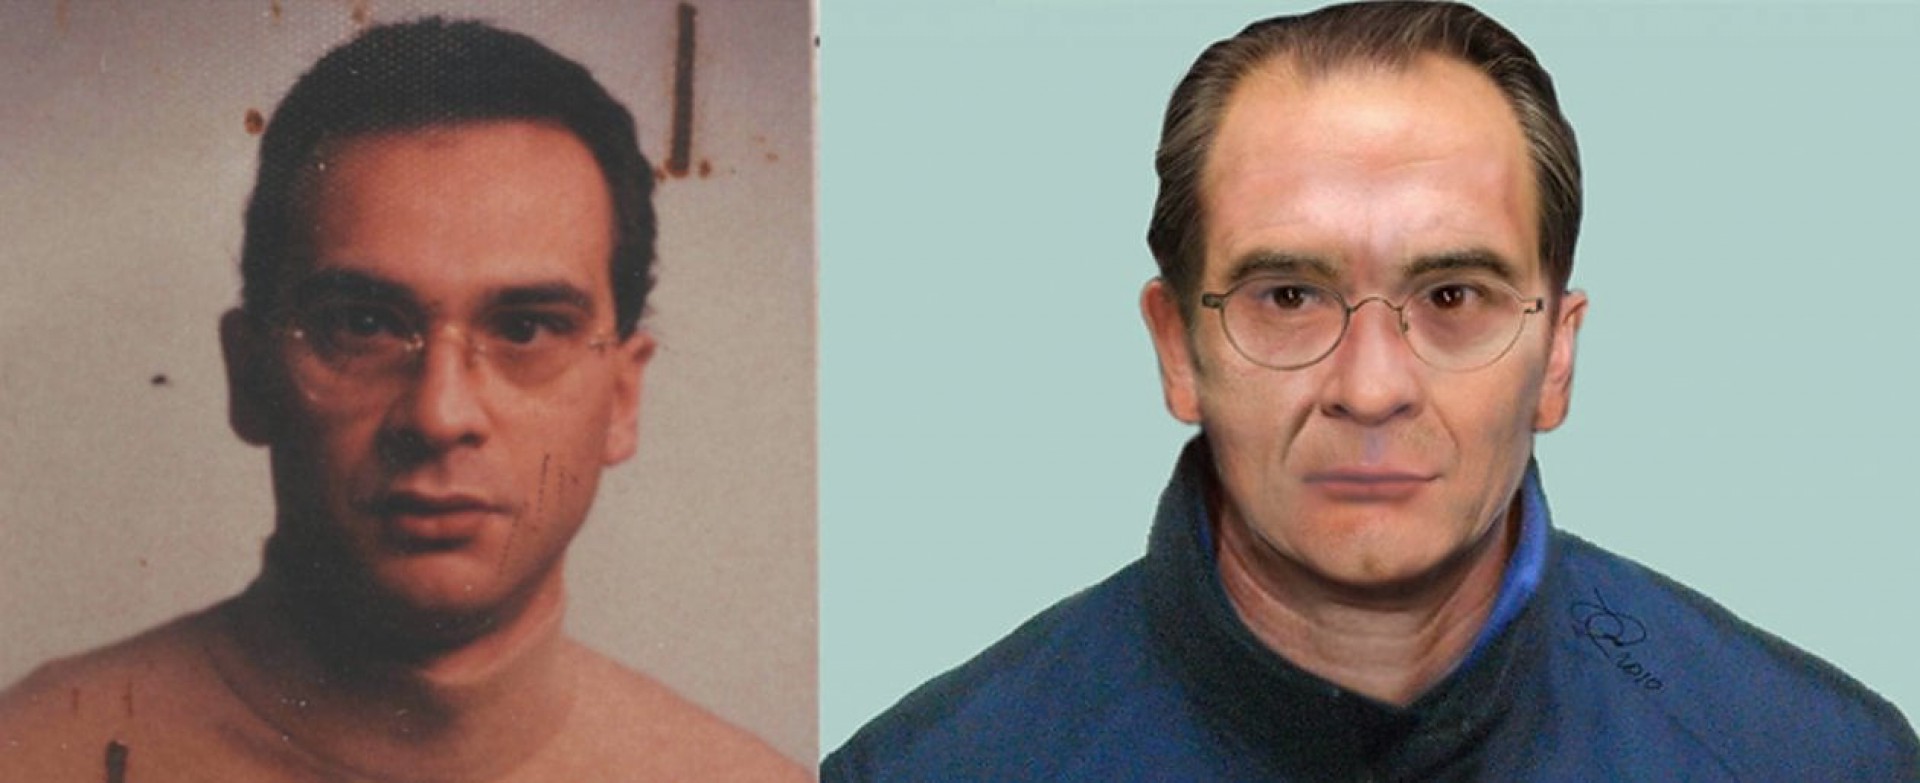 Matteo Messina Denaro, chefe da máfia Cosa Nostra - Reprodução